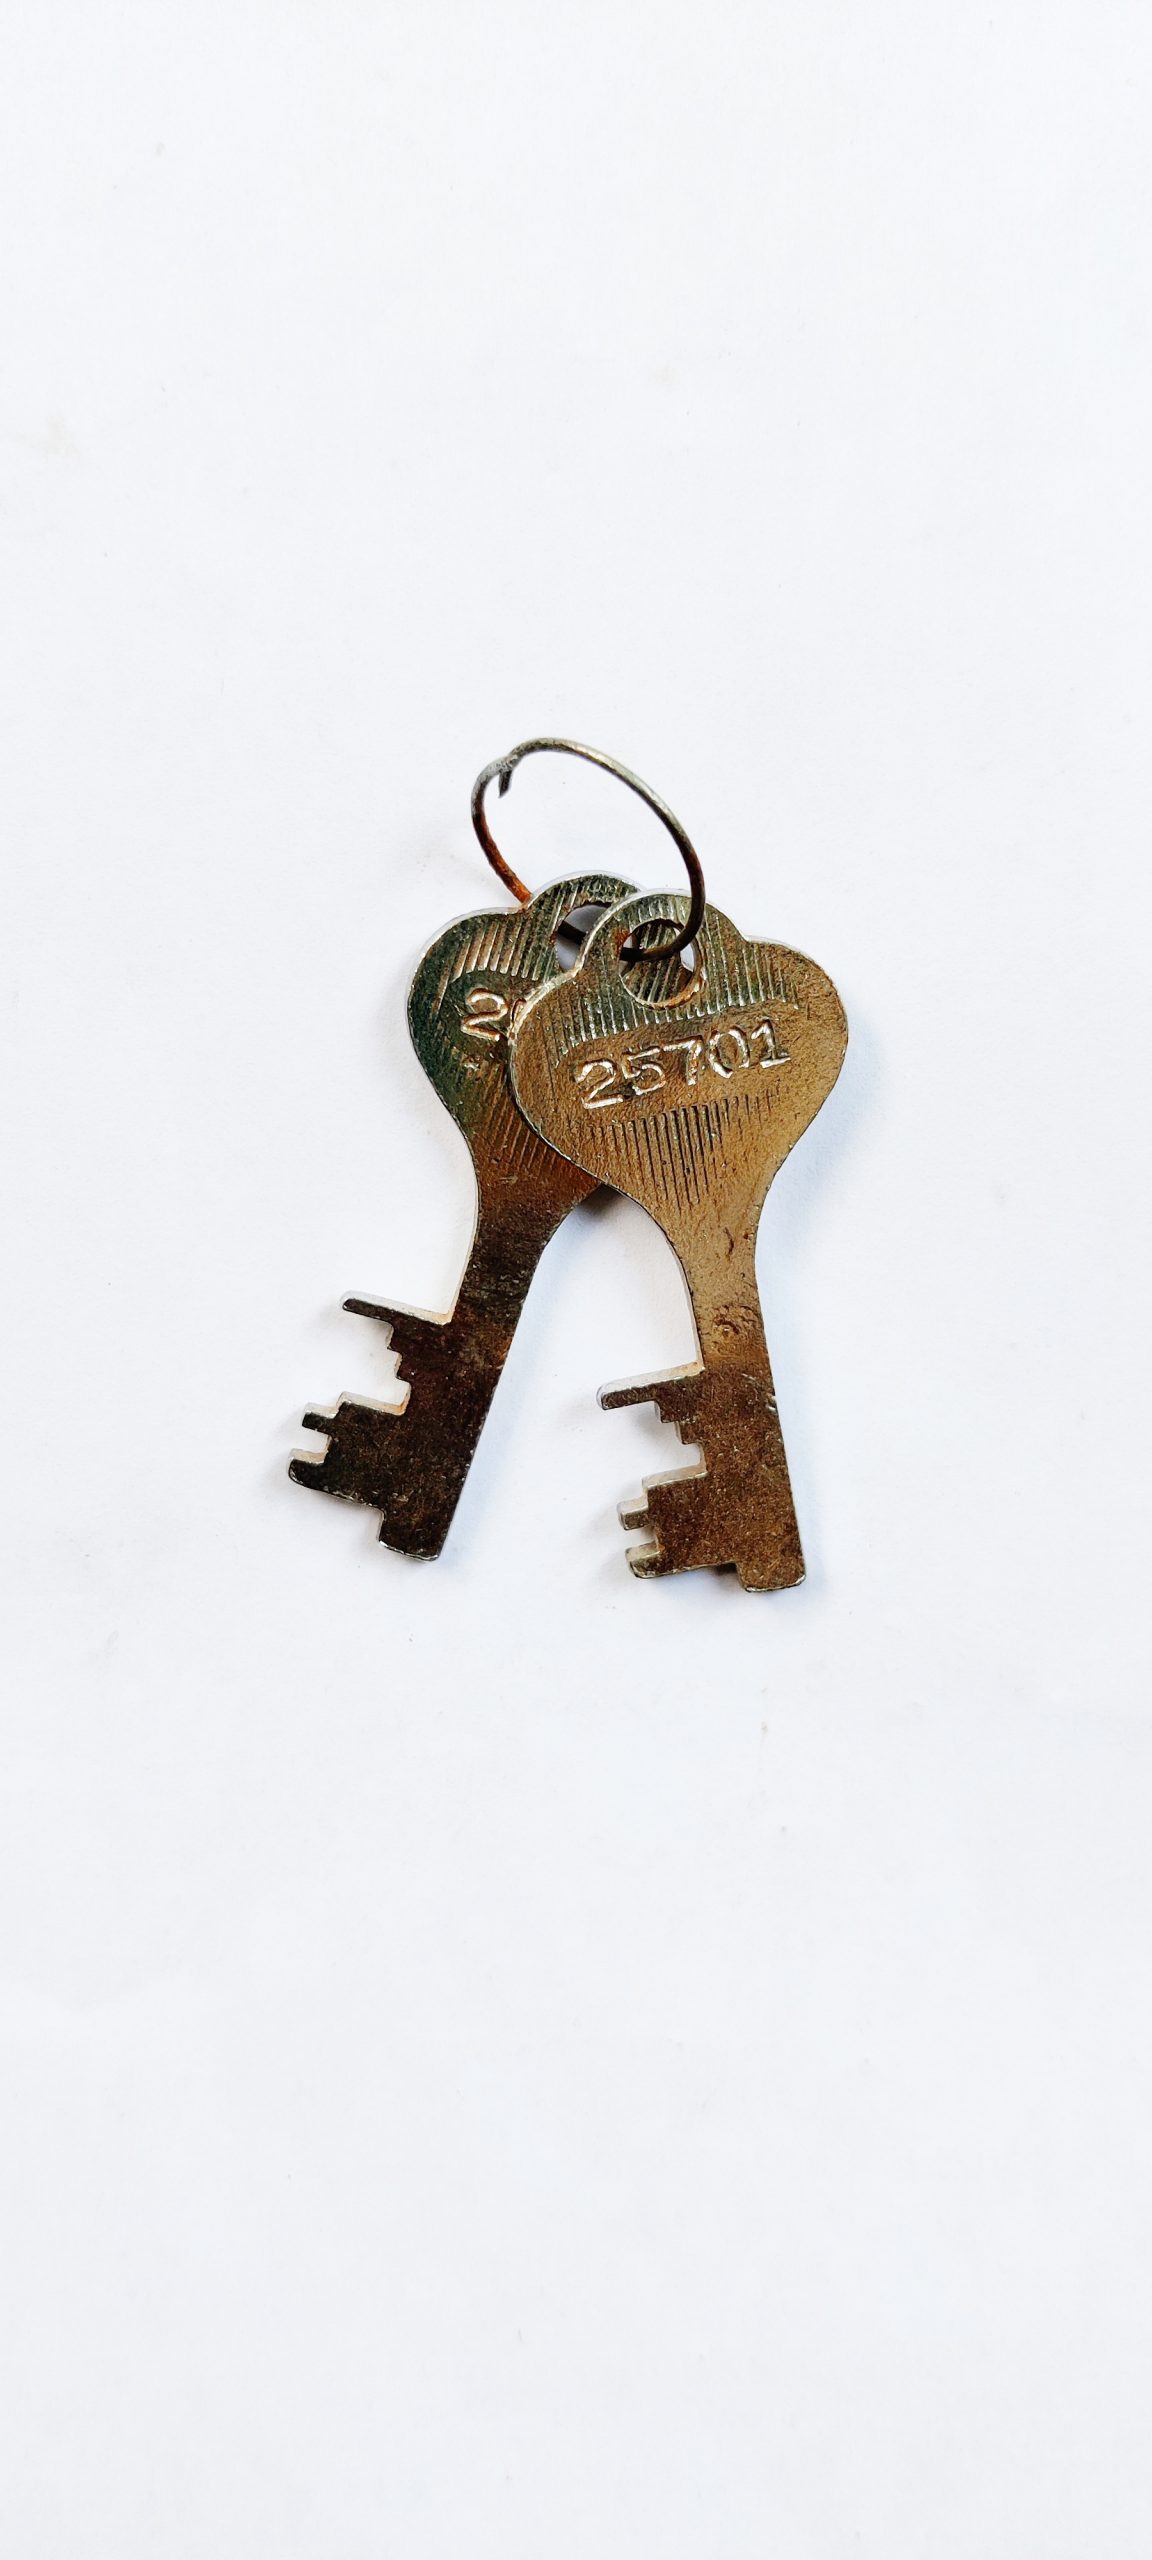 Keys of a lock